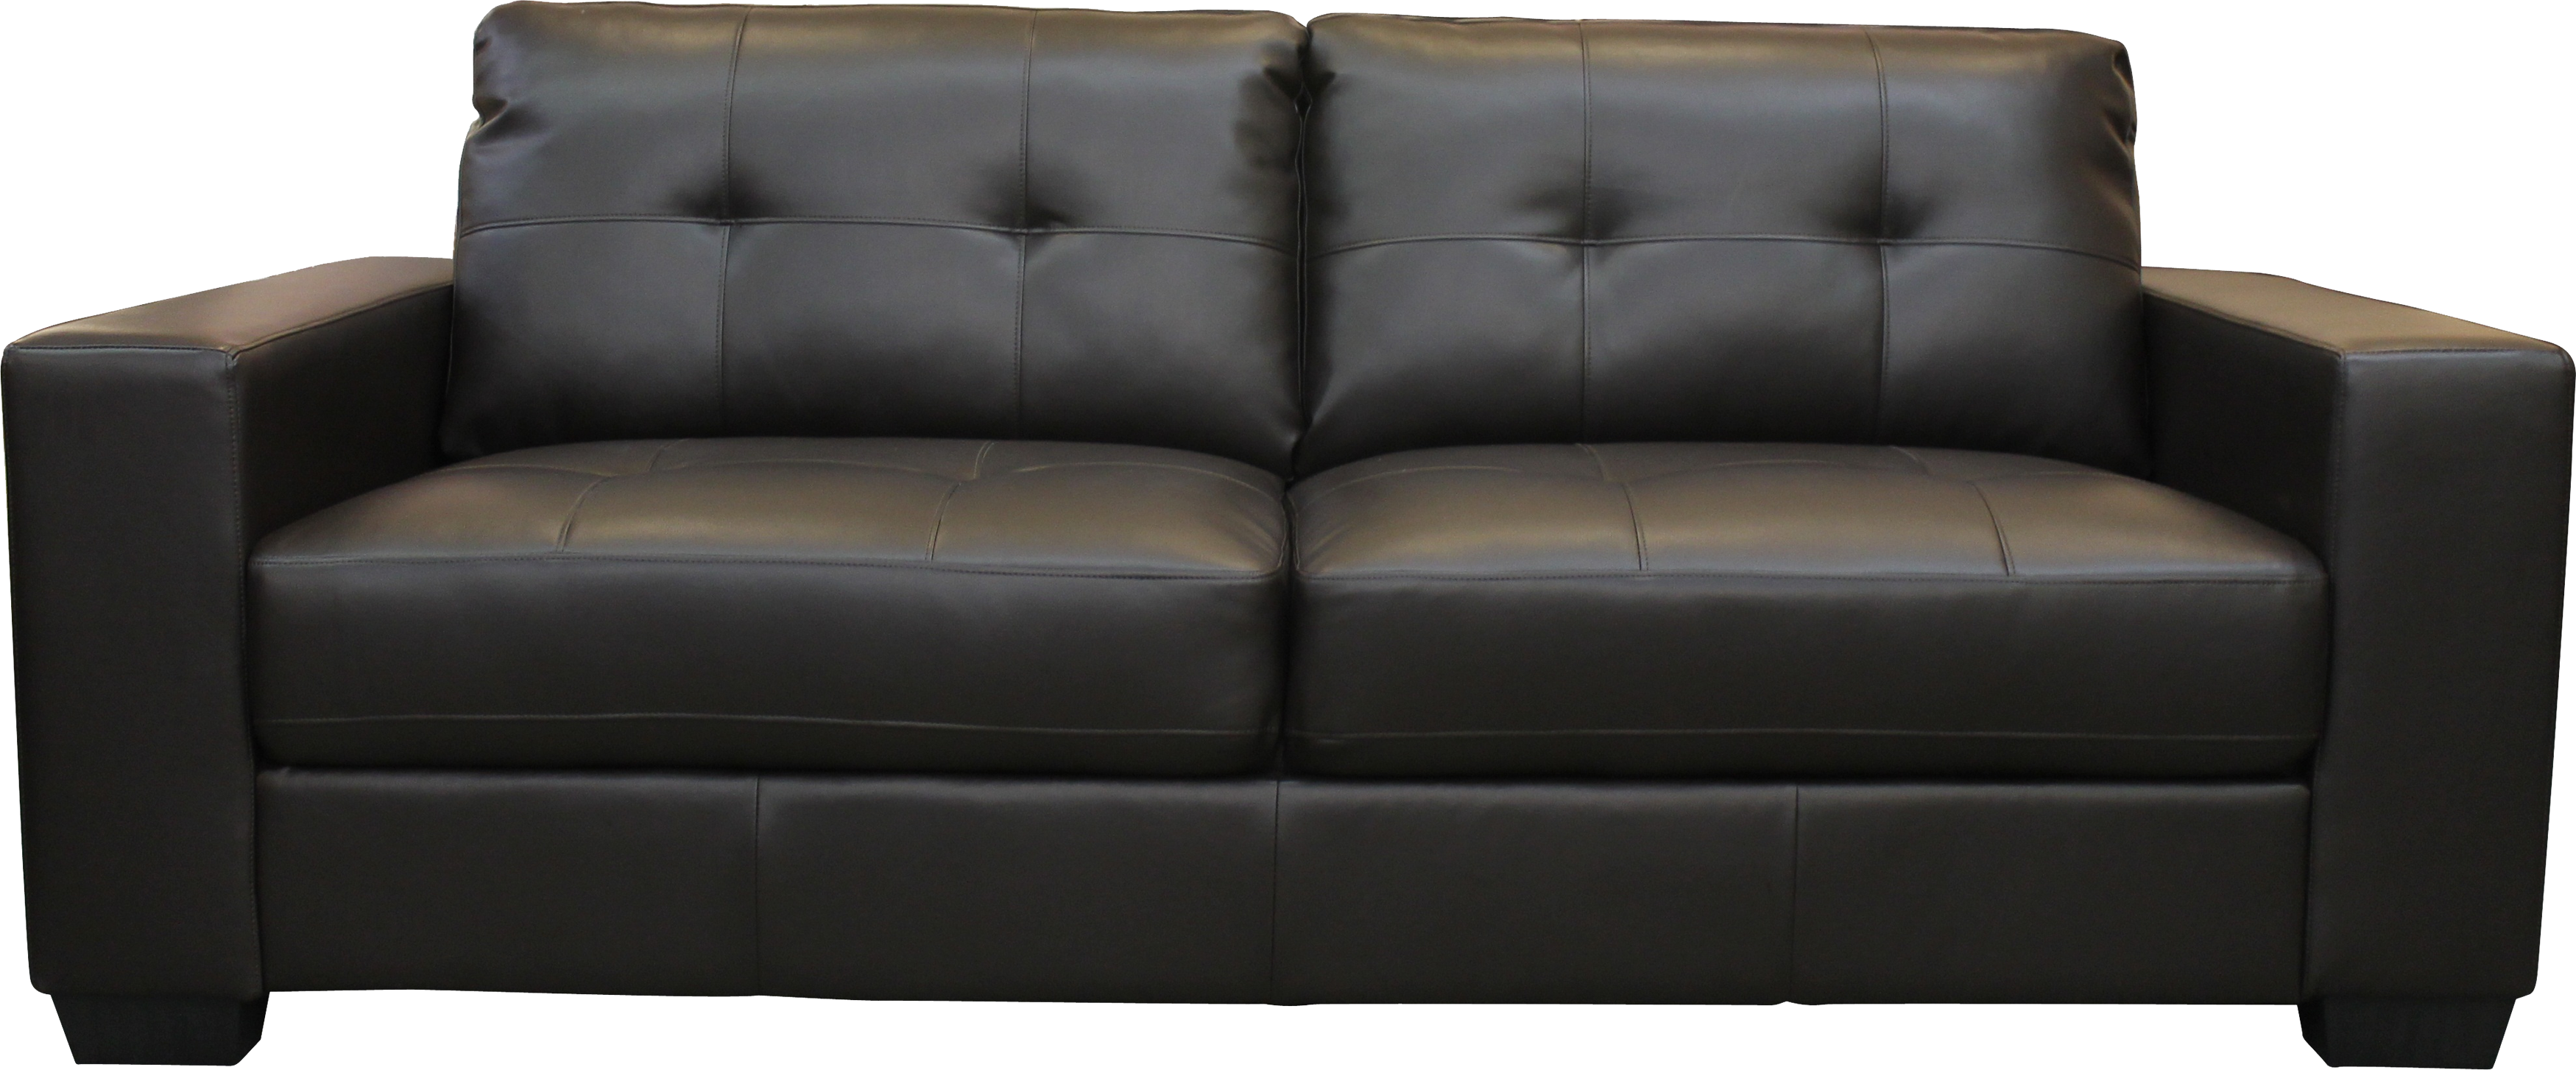 Black sofa PNG image